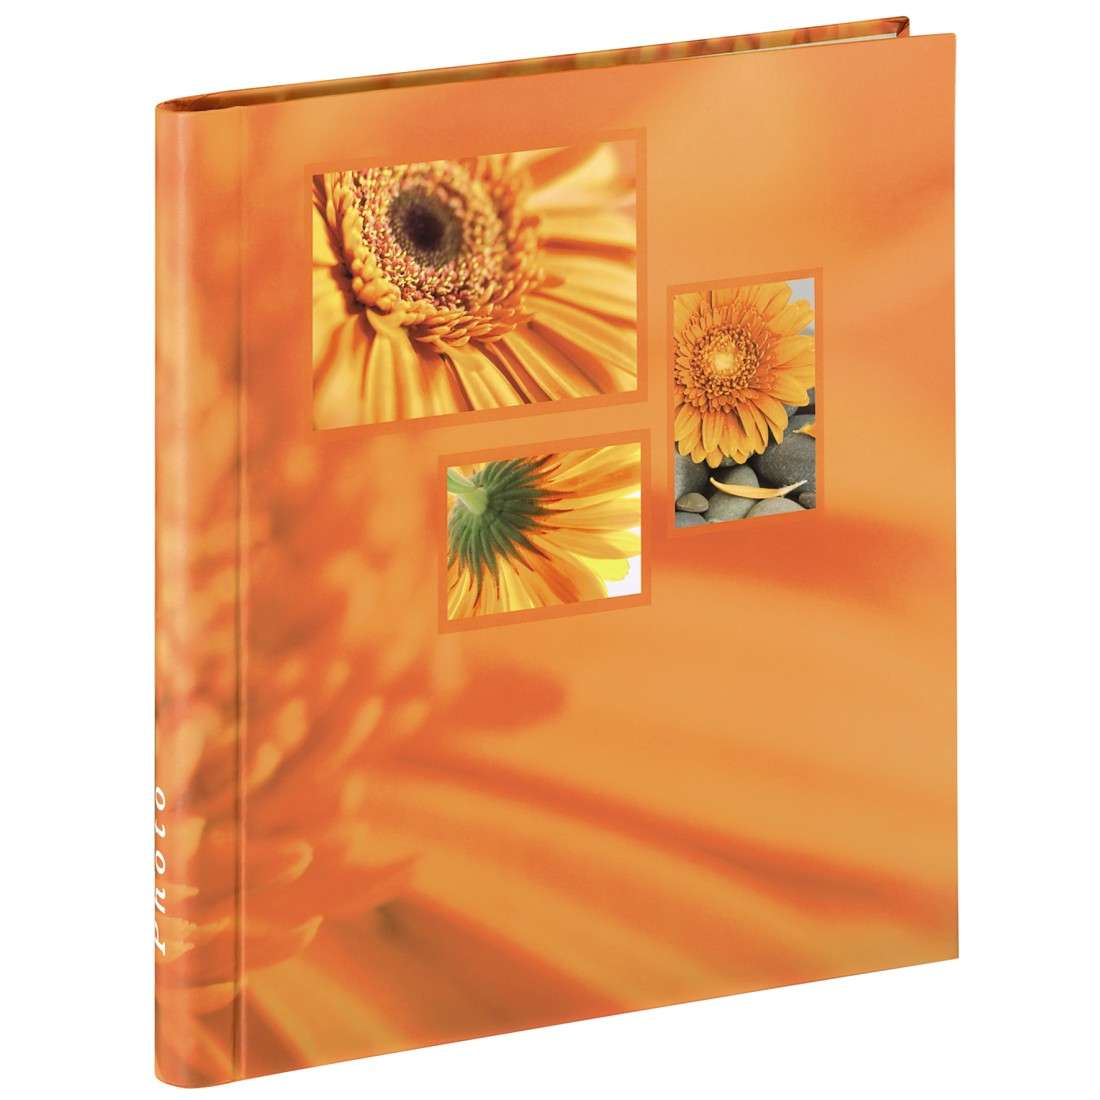 Selbstklebe-Album Singo, 28x31 cm, 20 weiße Seiten, Orange